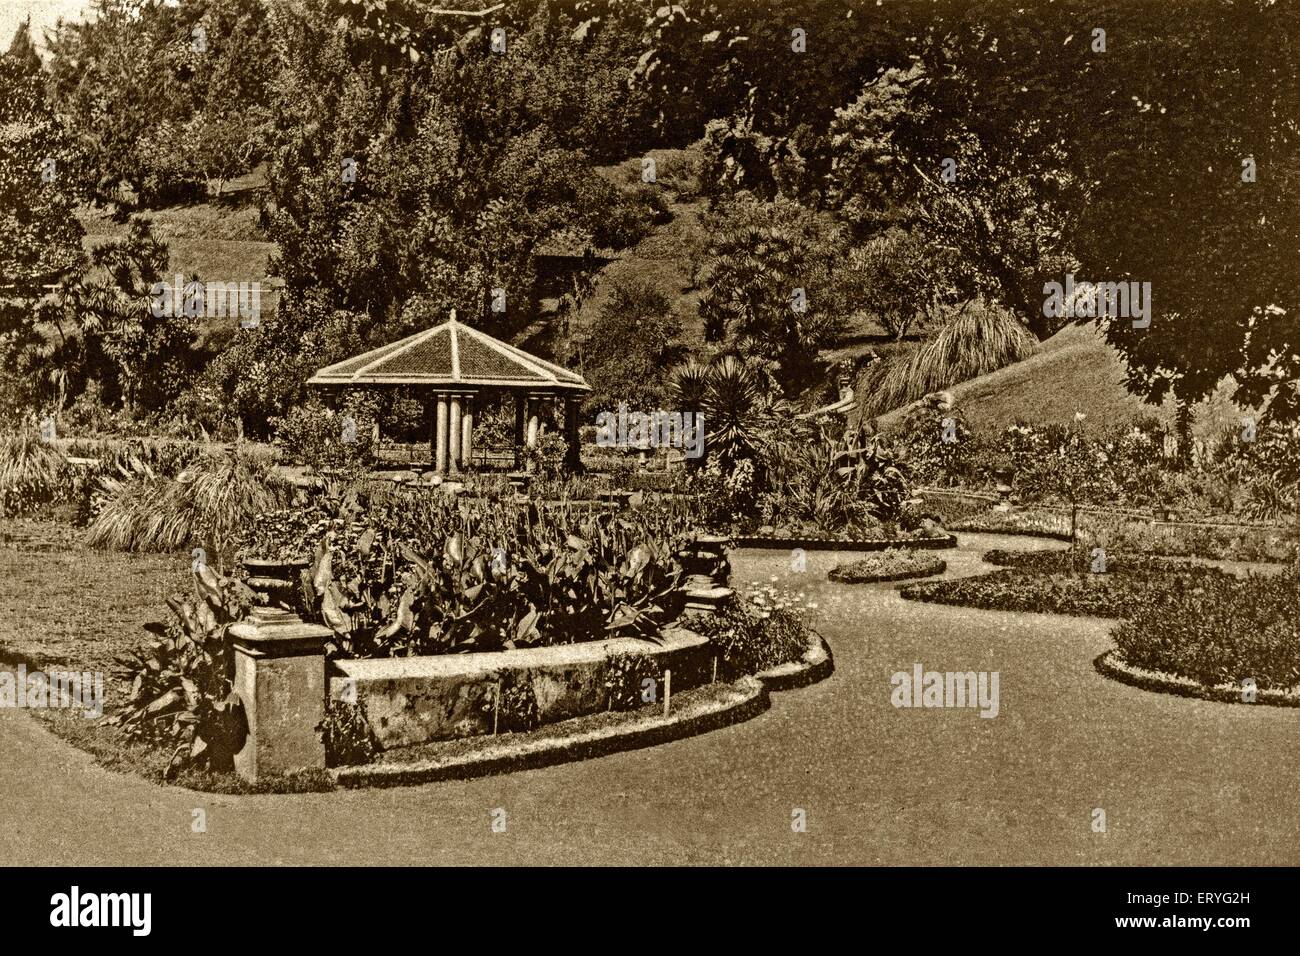 Bandstand Regierung Gärten, alten Jahrgang 1900s Bild, Ootacamund, Udagamandalam, Ooty; Tamil Nadu; Indien, asien Stockfoto